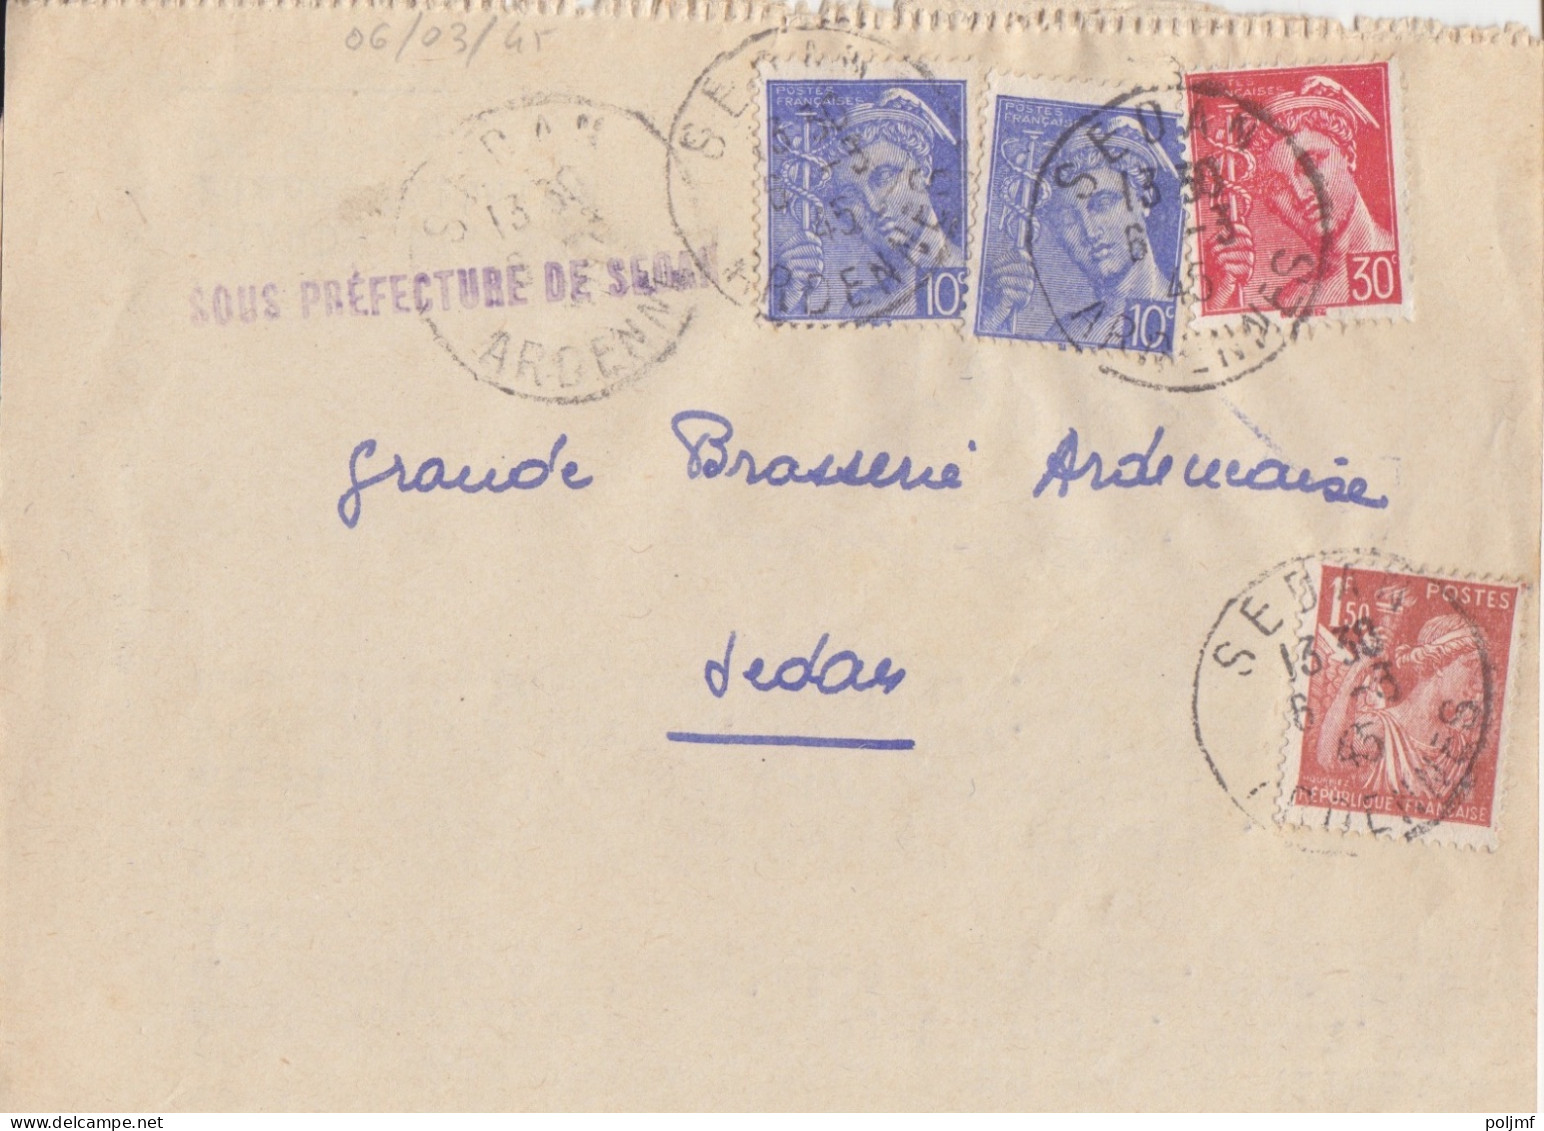 Lettre De Sous-Préfecture Obl. Sedan Le 6/3/45 Sur 10c Et 30c Mercure N° 546, 547 Et 1f50 Iris N° 652 (tarif Du 1/3/45) - 1938-42 Mercure